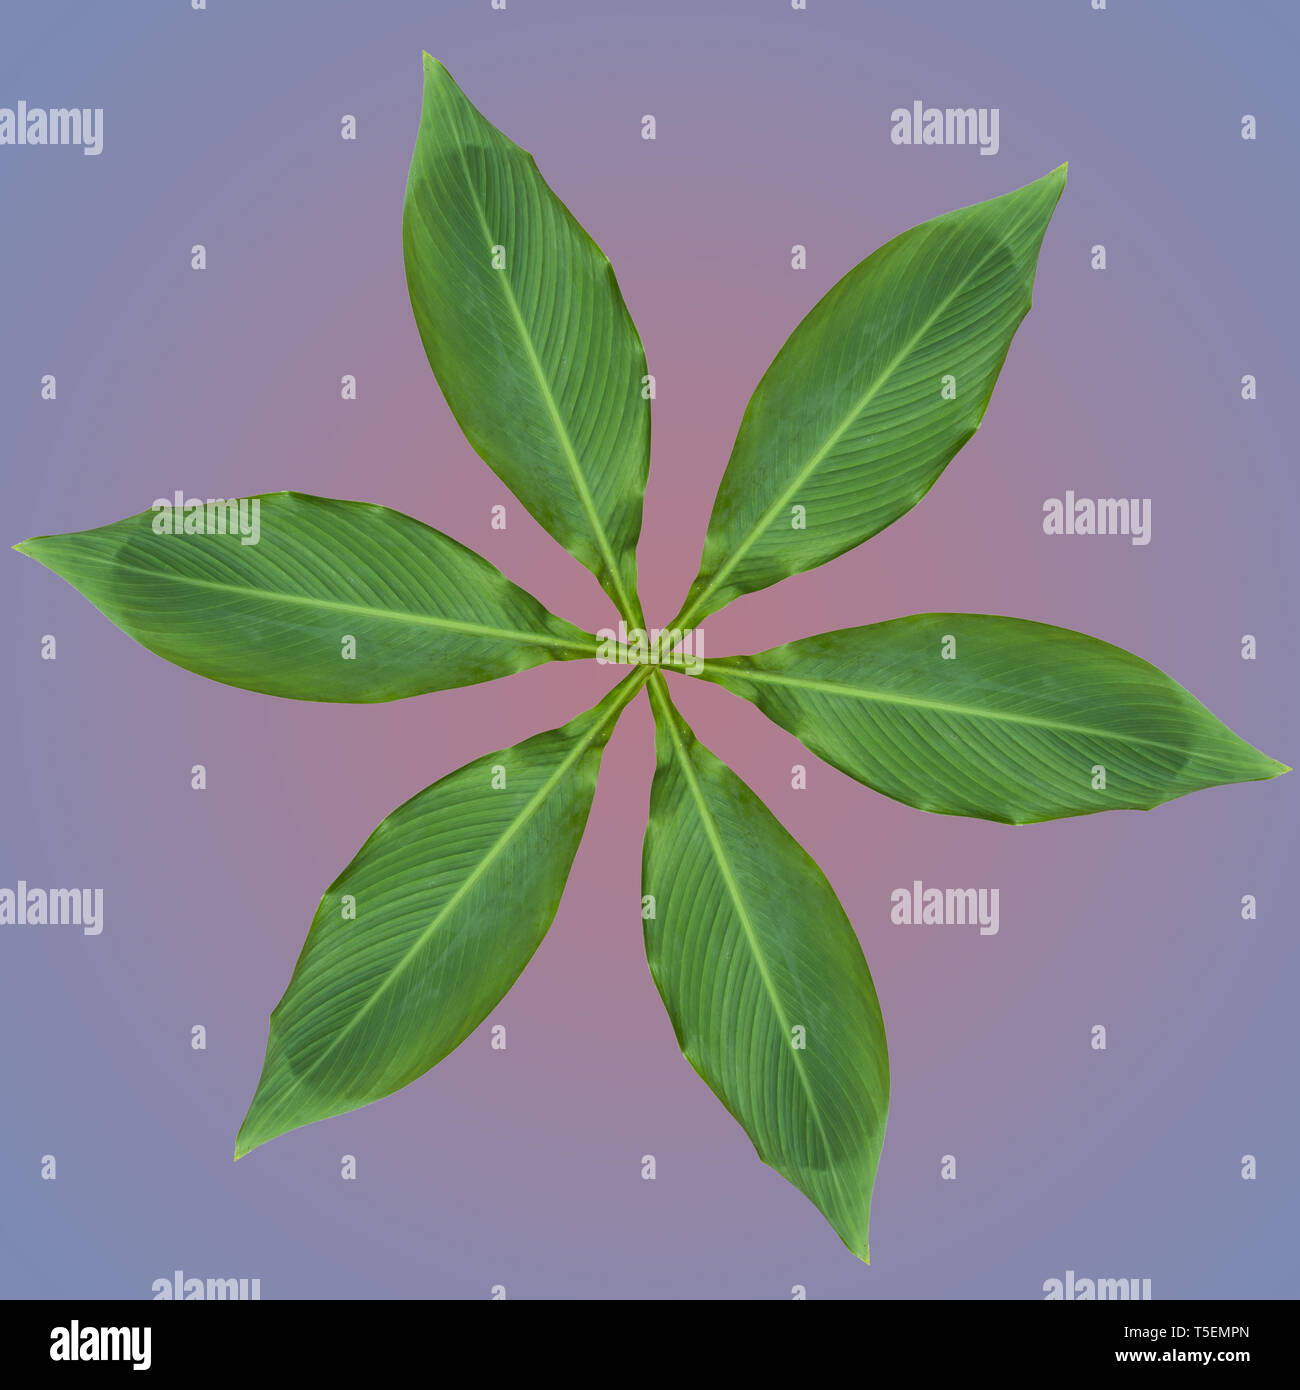 Imagen mejorada digitalmente de seis hojas dispuestas en un diseño circular Foto de stock